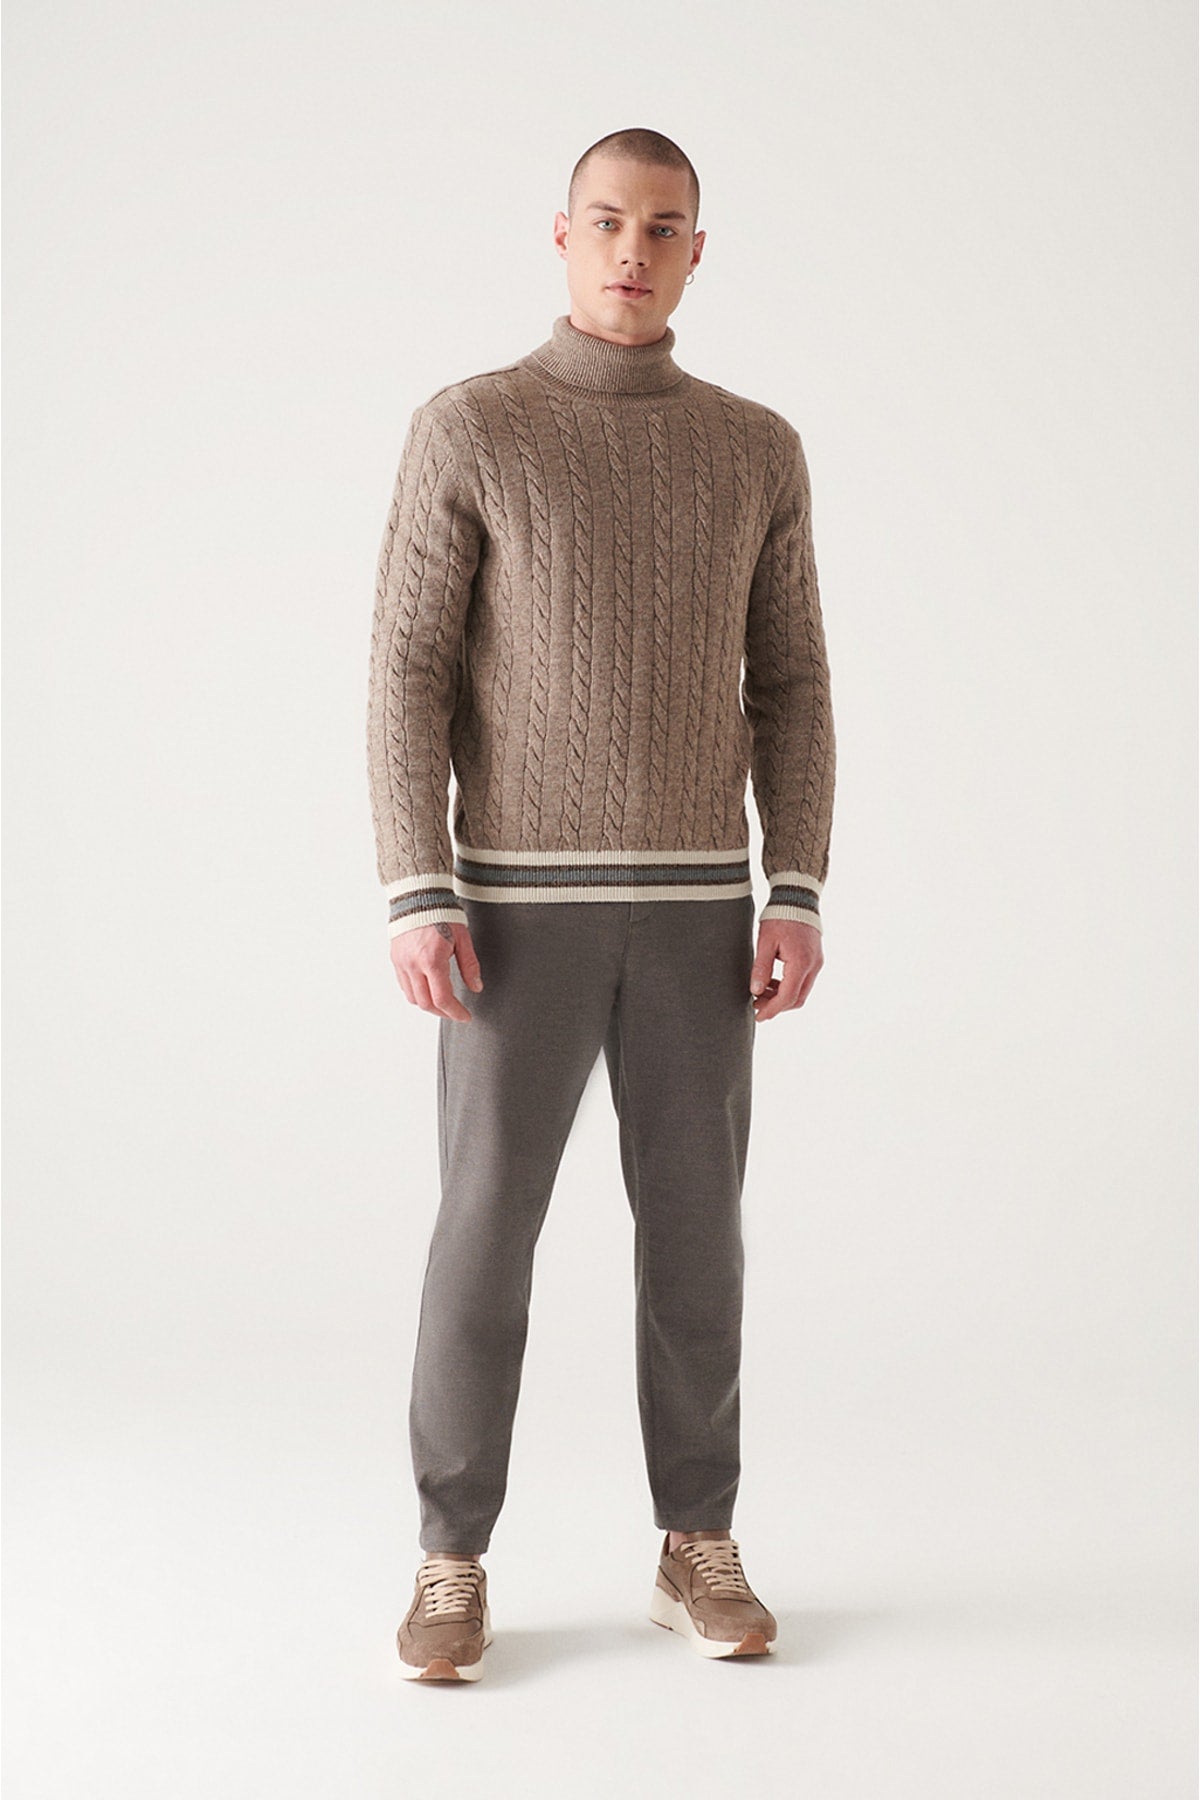 Unisex mink full fishing collar braided knitwear sweater A22y5041